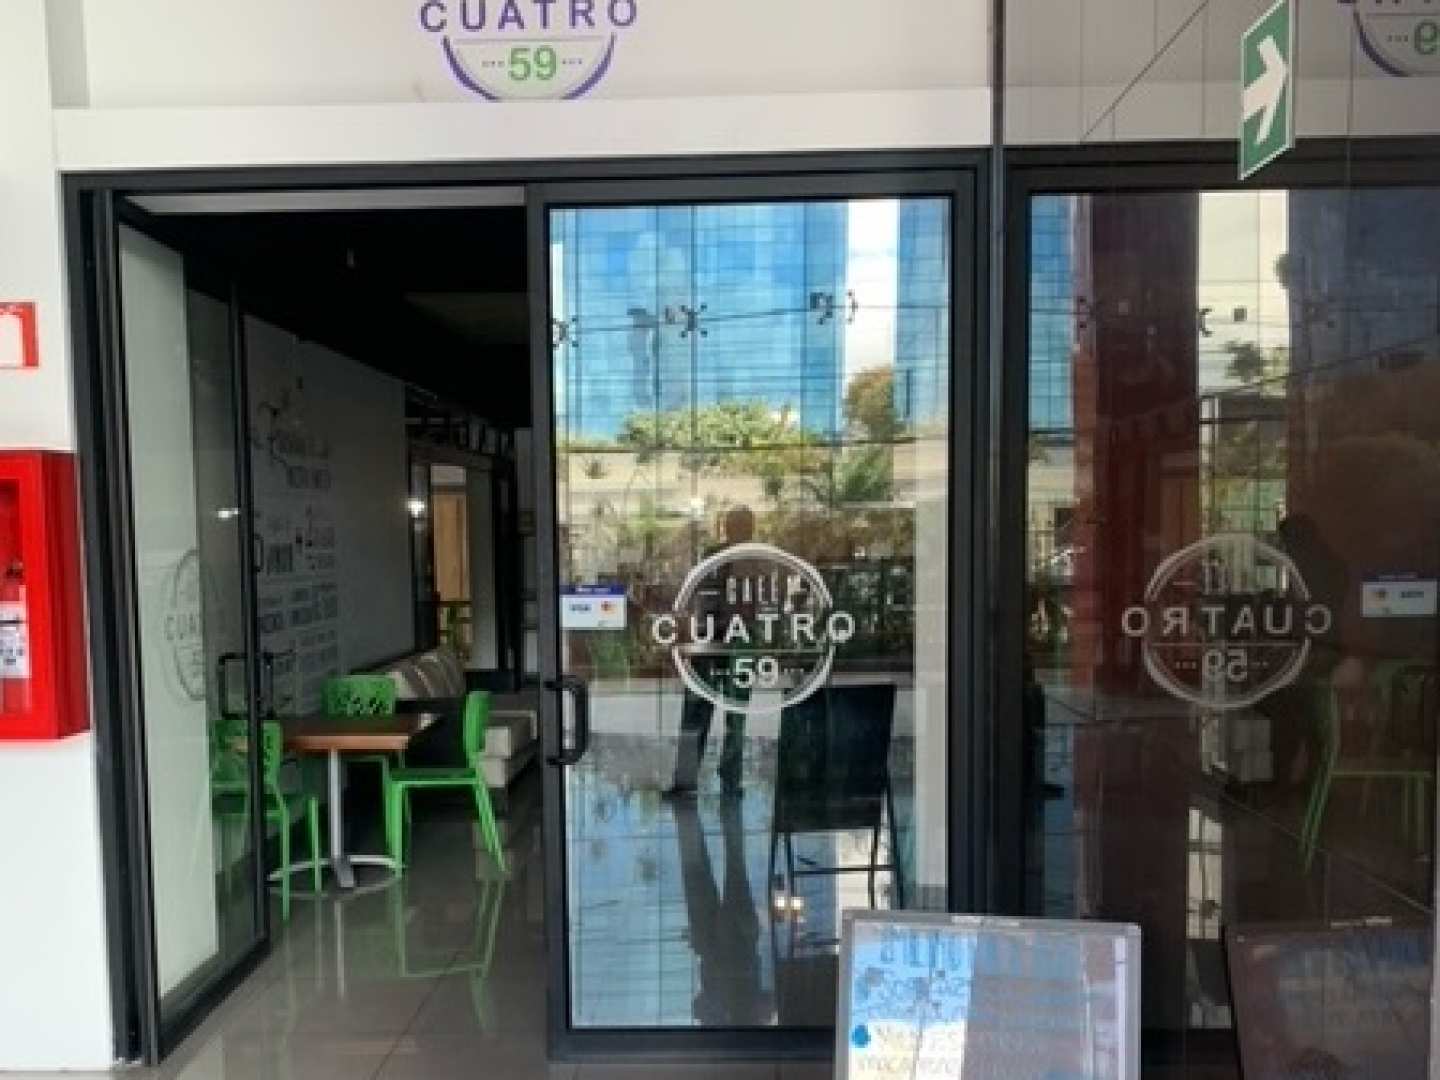 Cafe Cuatro 59